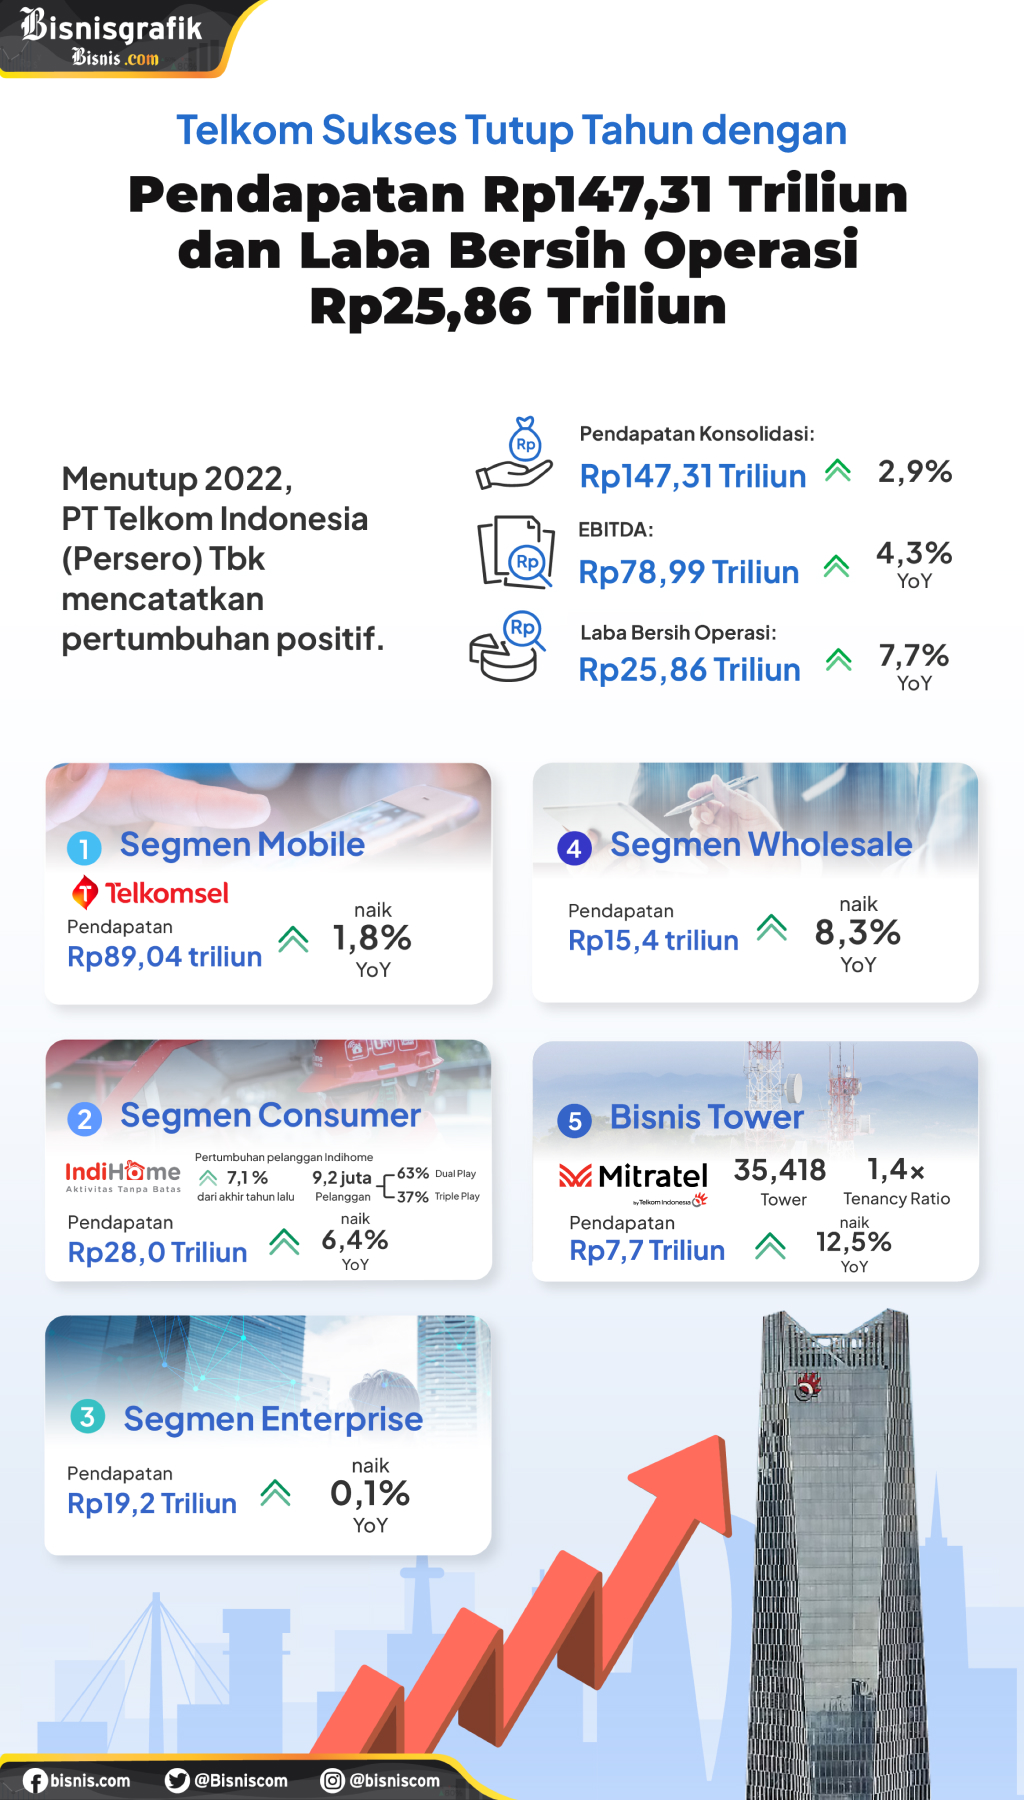 Foto: Telkom Sukses Tutup Tahun dengan pendapatan Rp143,31 Triliun dan Laba Bersih Operasi Rp25,86 Triliun